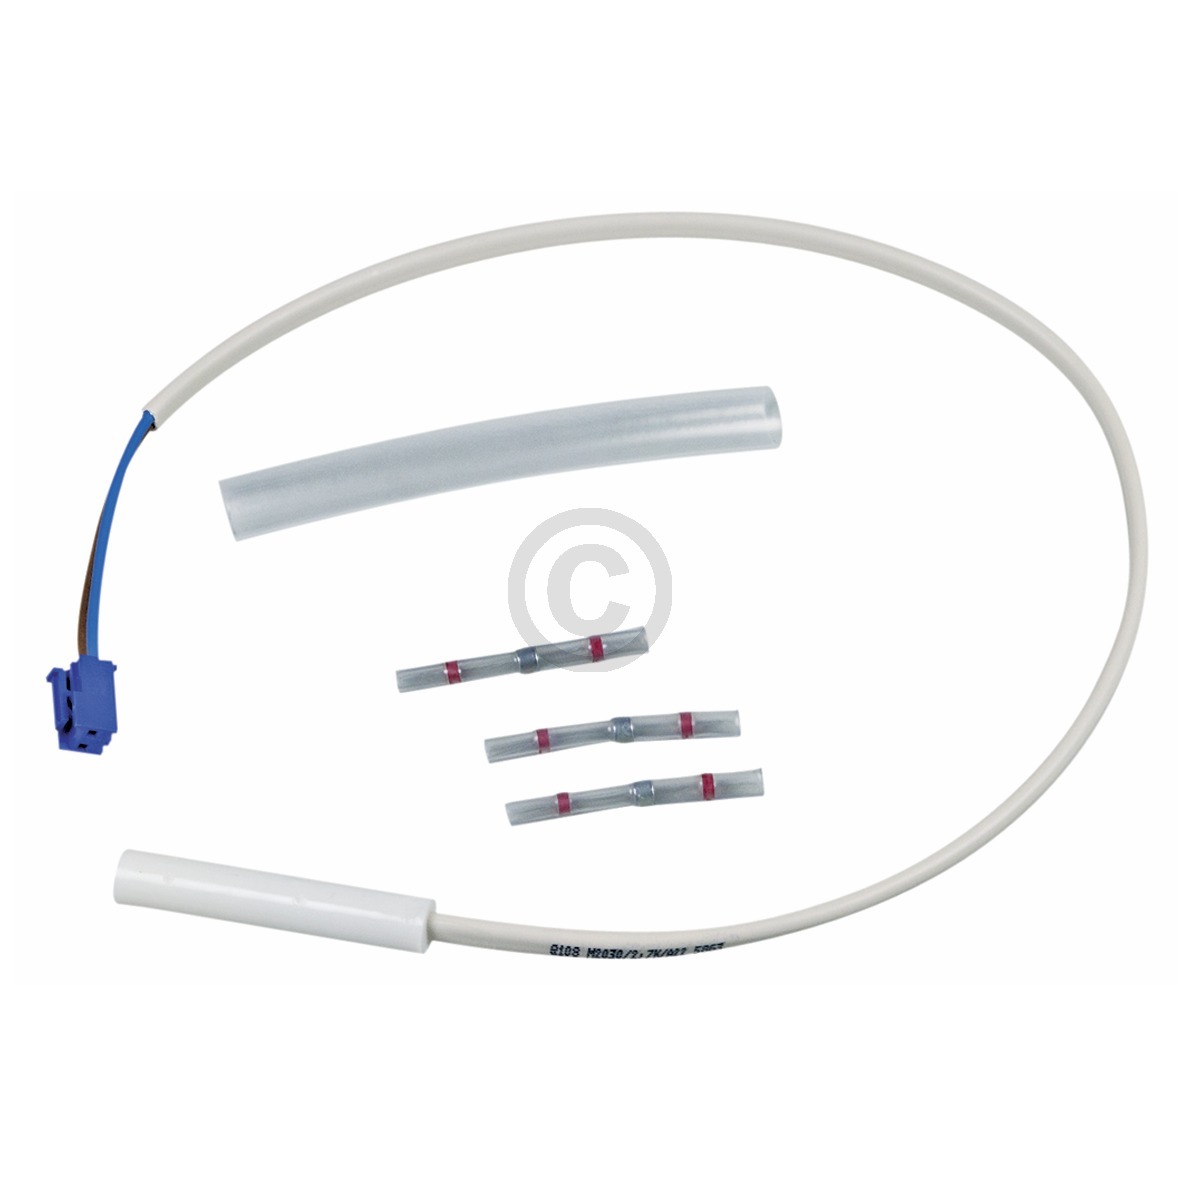 Fühler Sensor Kit Whirlpool 481231018846 für Kühlschrank Bauknecht, Whirlpool, I